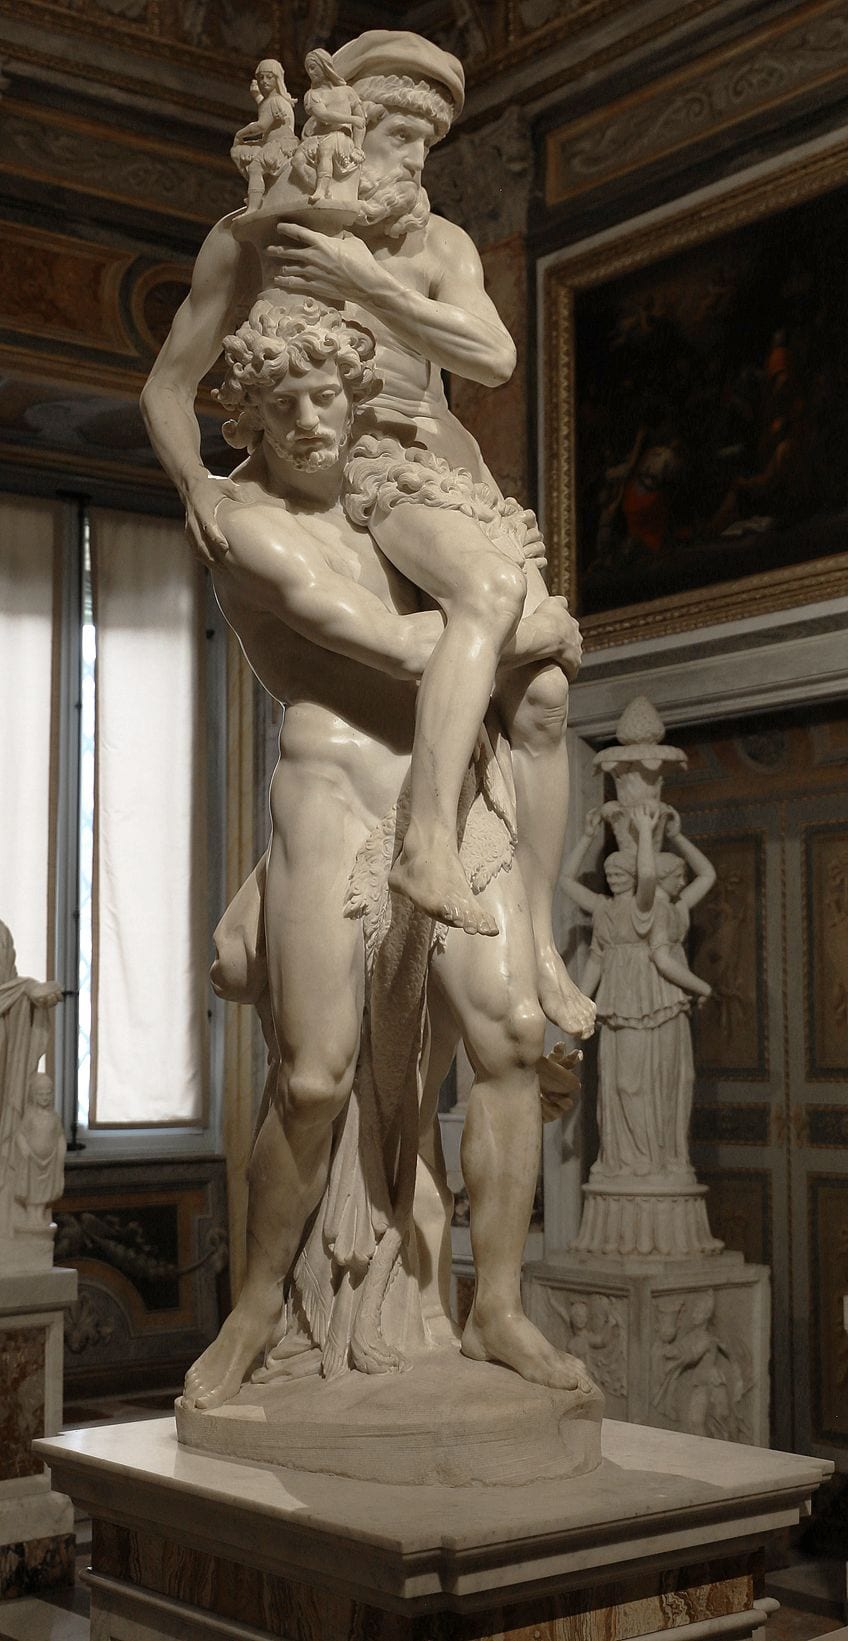 Statue by Sculptor Bernini